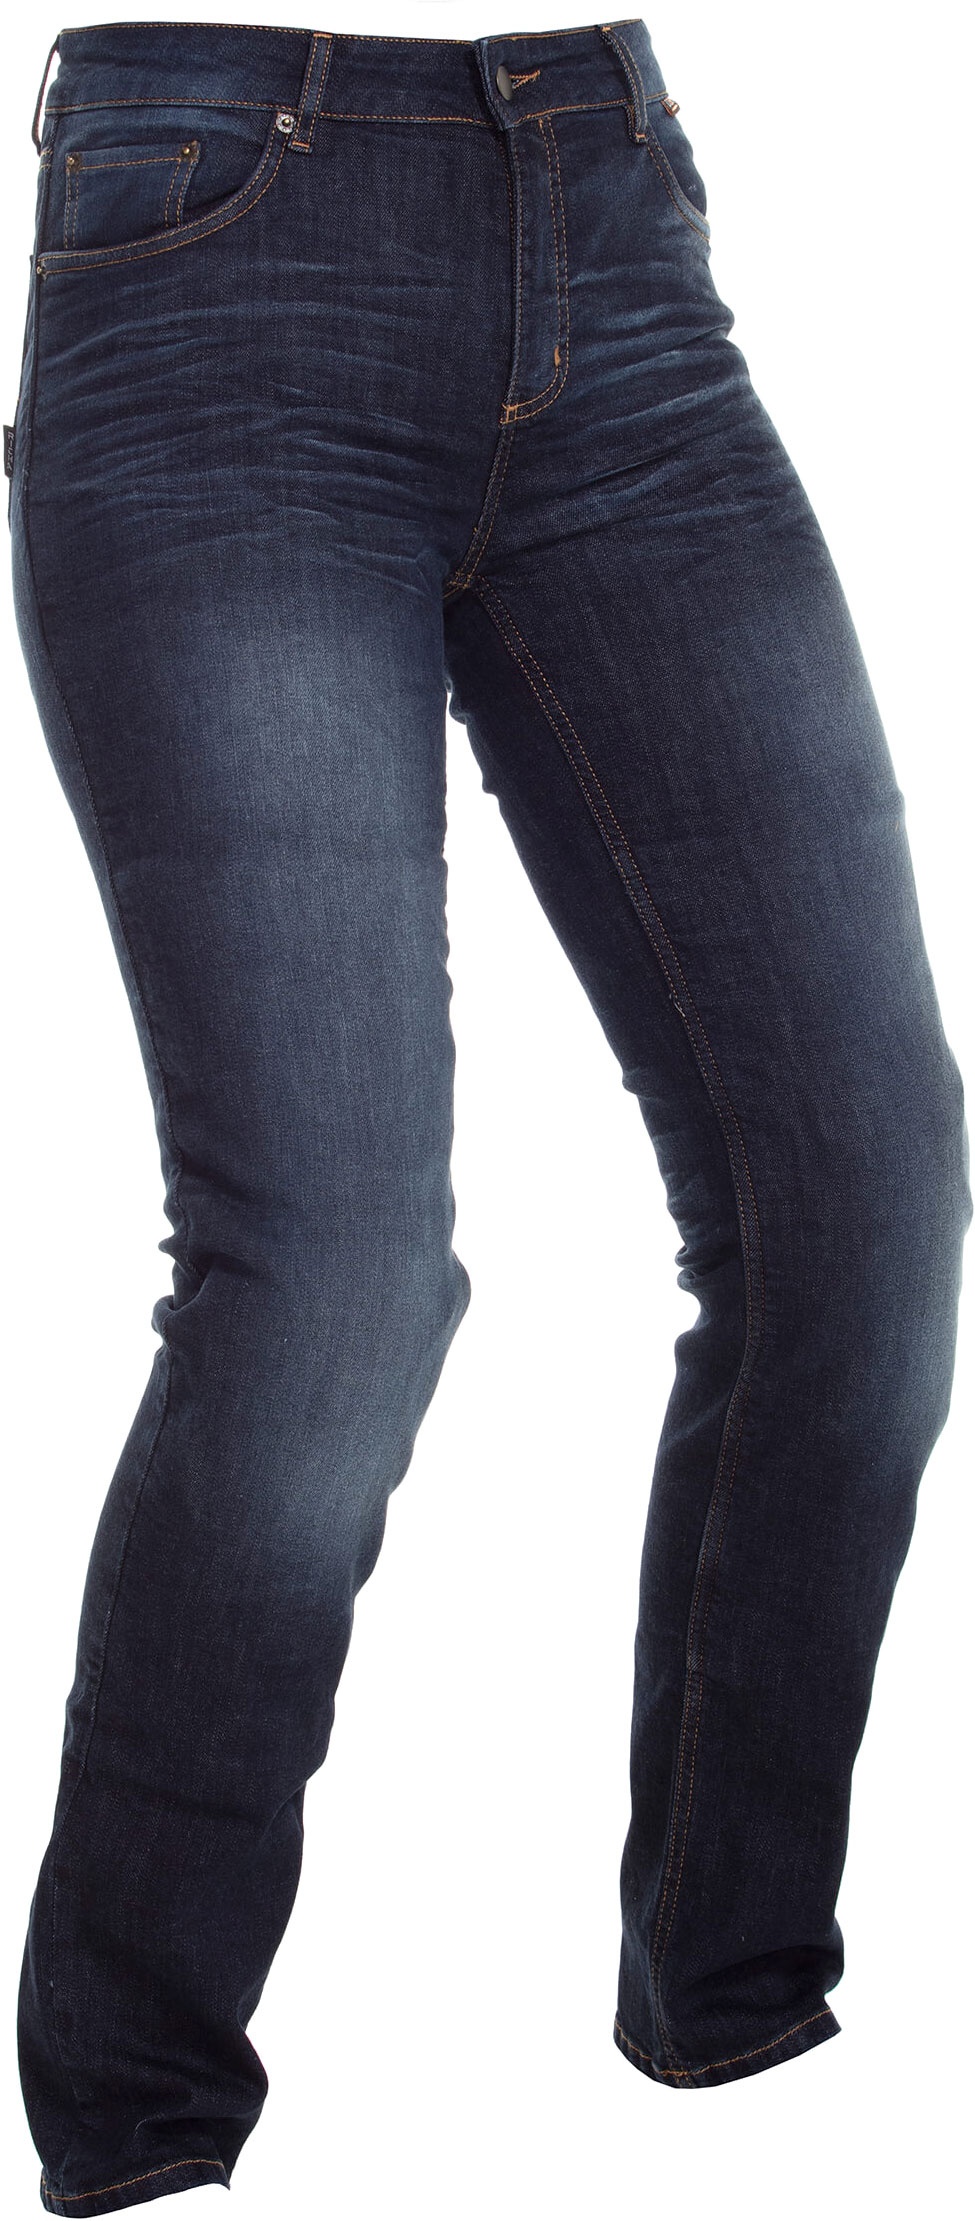 Richa Katie, jeans femmes - Bleu Foncé - 46